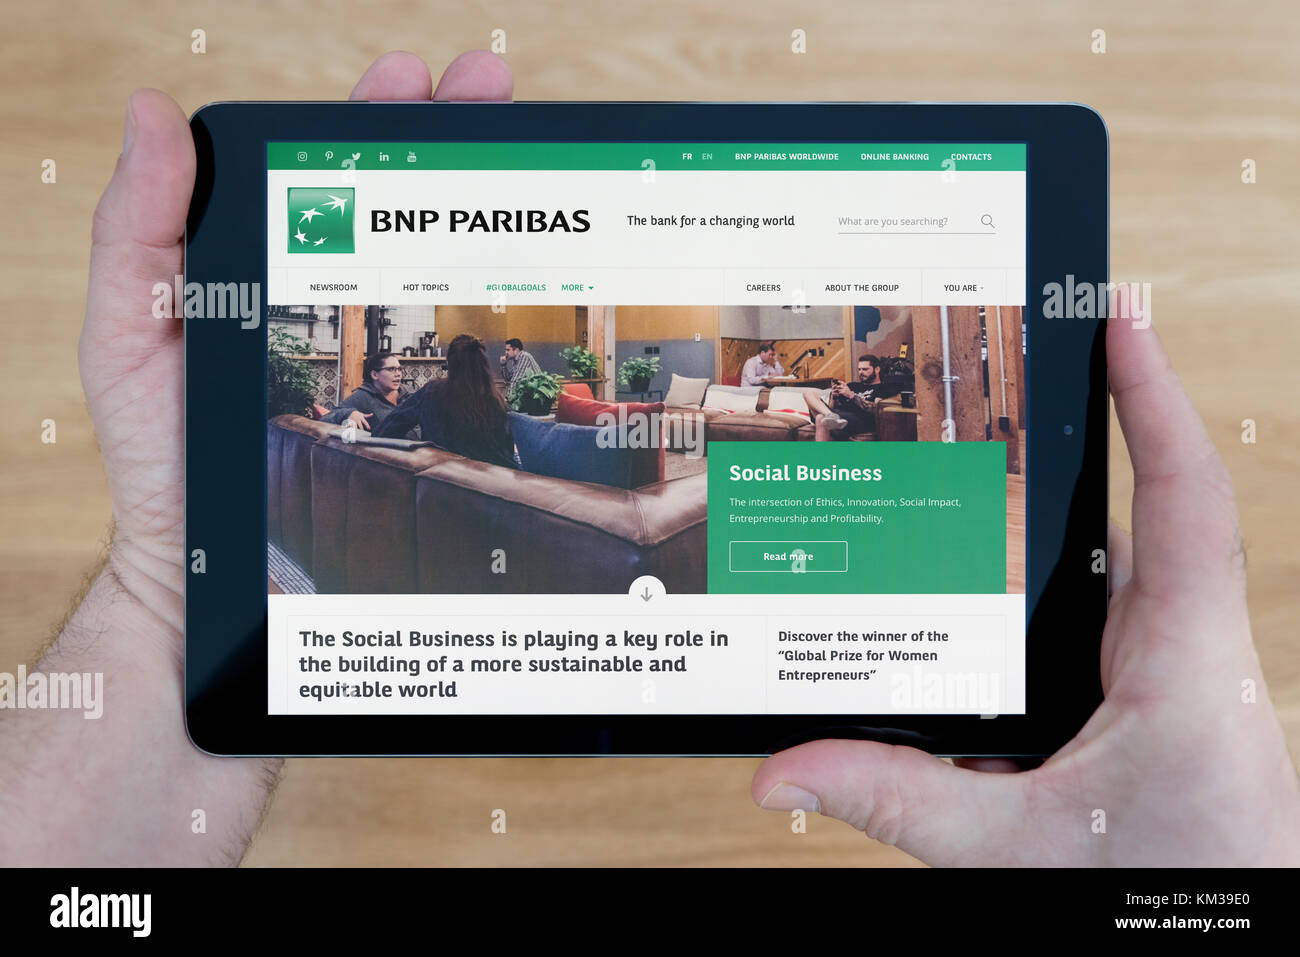 Un hombre se ve en el sitio web del banco BNP Paribas en su iPad dispositivo tablet, disparó contra una mesa de madera fondo superior (uso Editorial solamente) Foto de stock